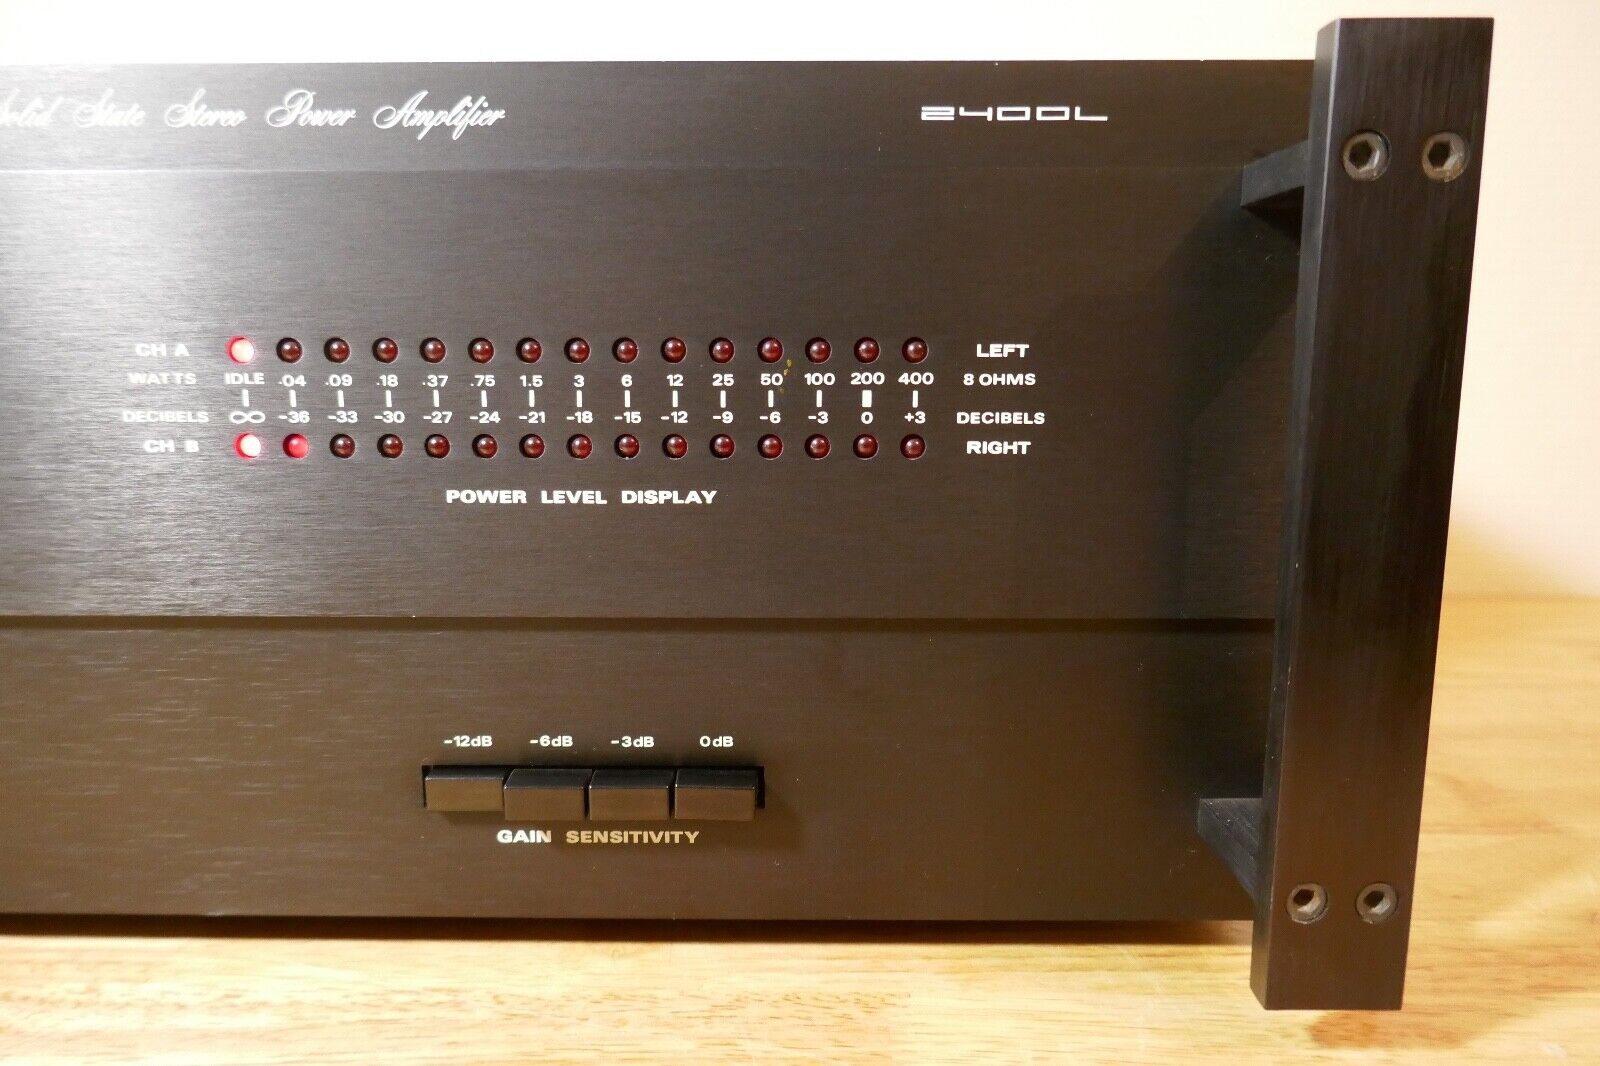 Amplificateur amplifier SAE 2400L vintage occasion